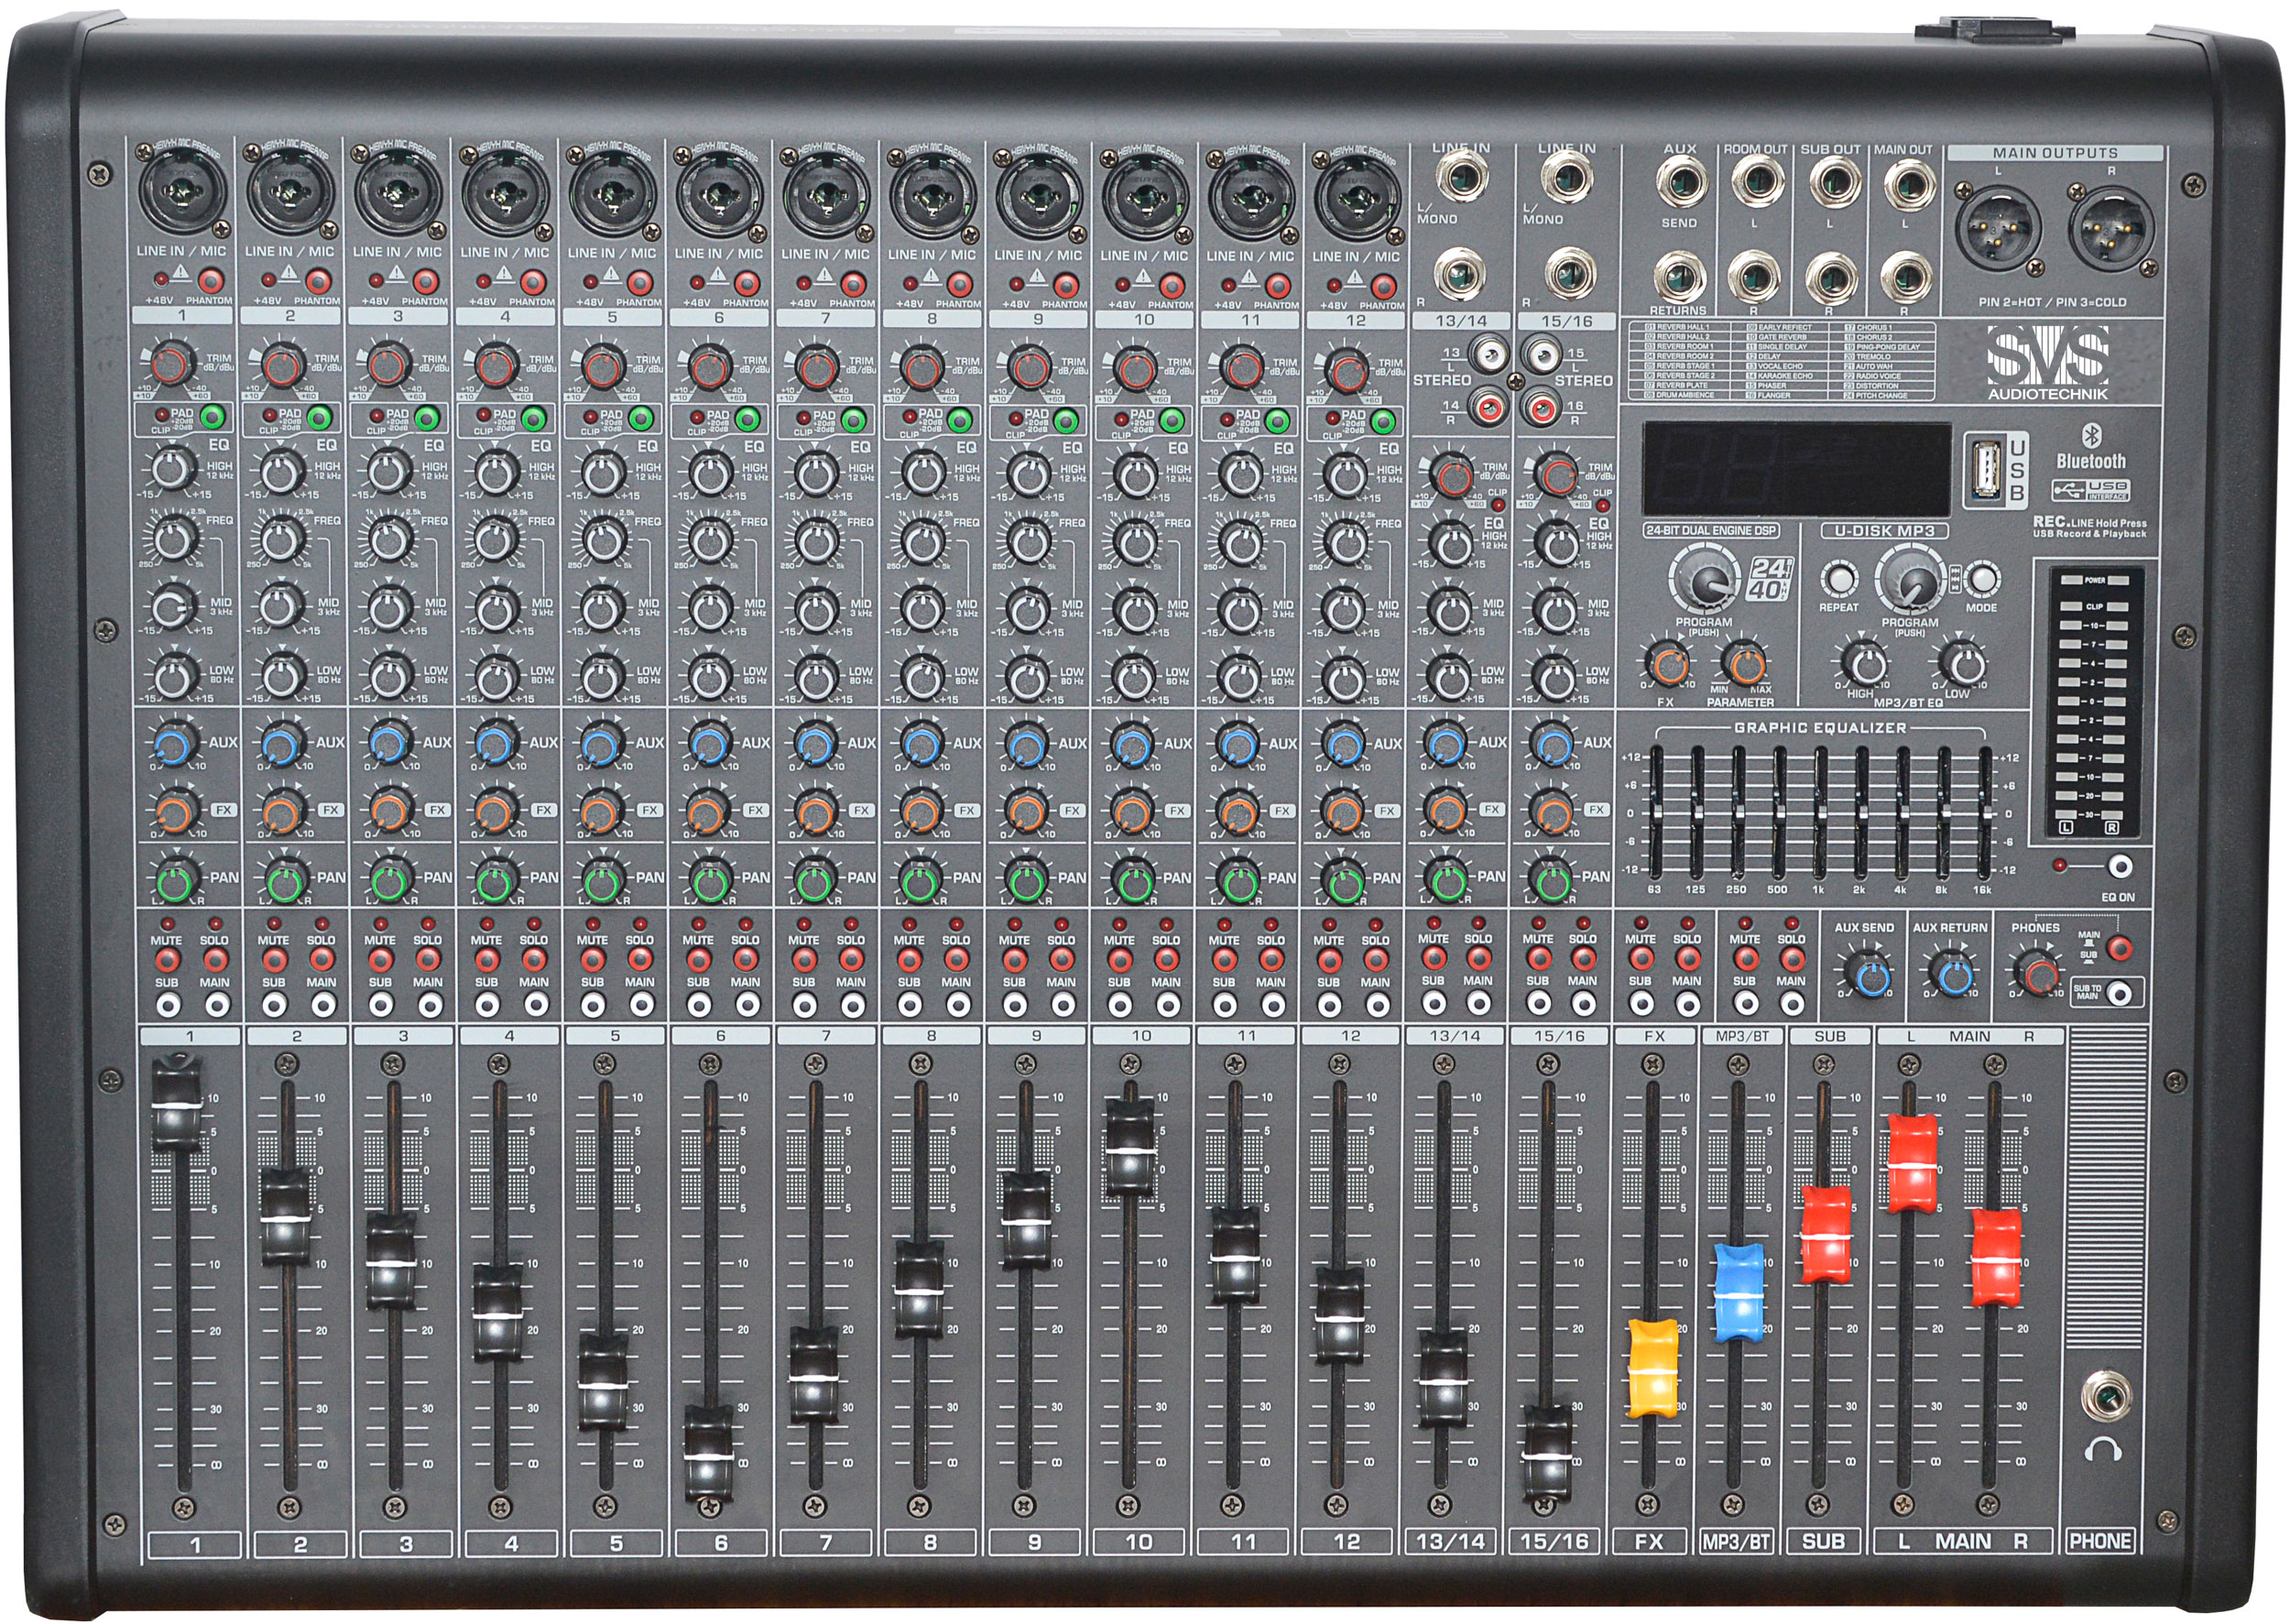 Детальная картинка товара SVS Audiotechnik mixers AM-16 в магазине Музыкальная Тема